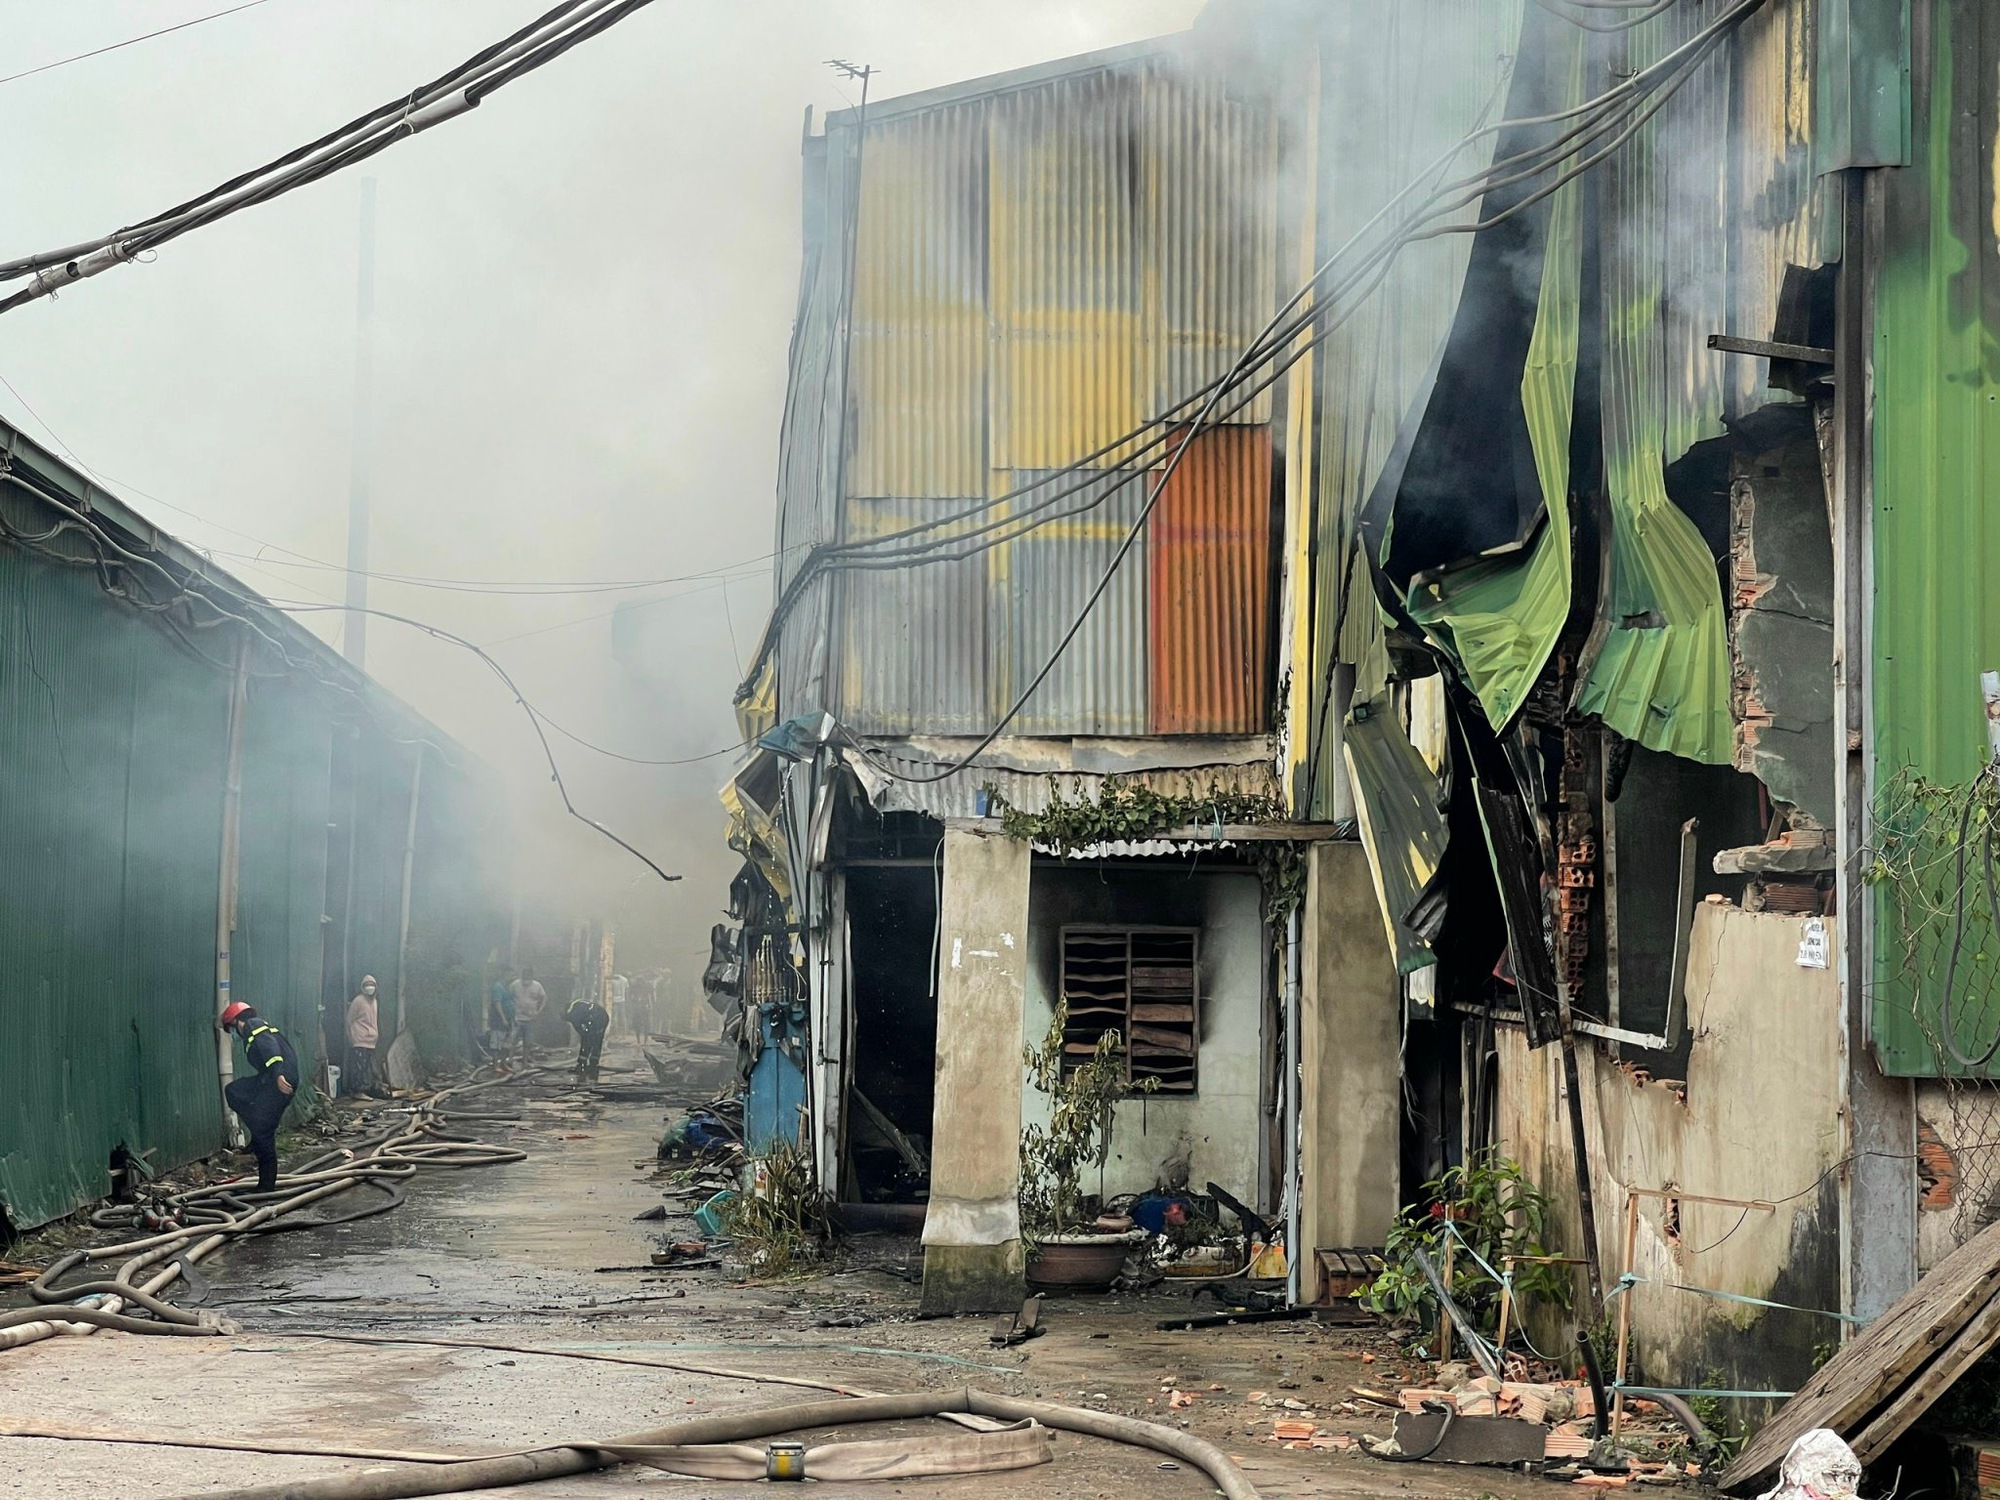 Cháy nhiều xưởng gỗ ở Đồng Nai: Điều động 10 xe, hơn 100 cảnh sát tham gia chữa cháy